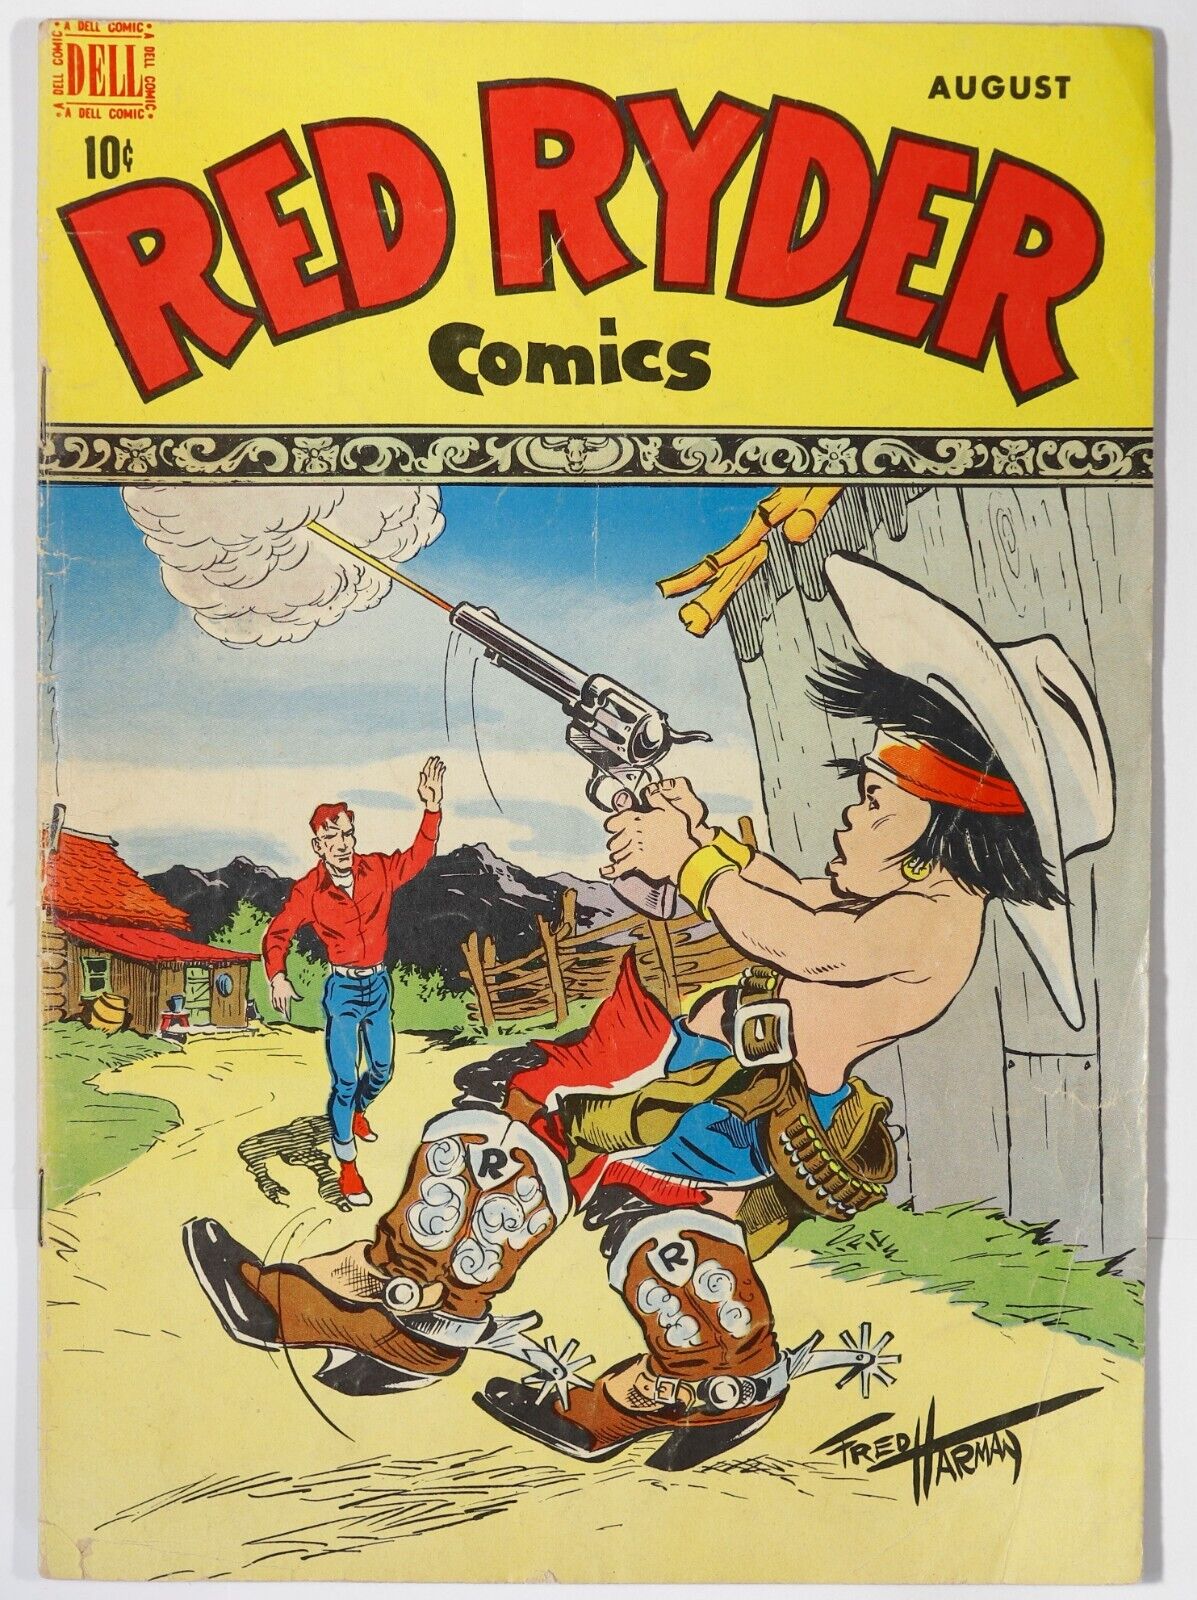 Red Ryder Comics #61 - $0.10 Dell Comics, Feb. 1948 - VG